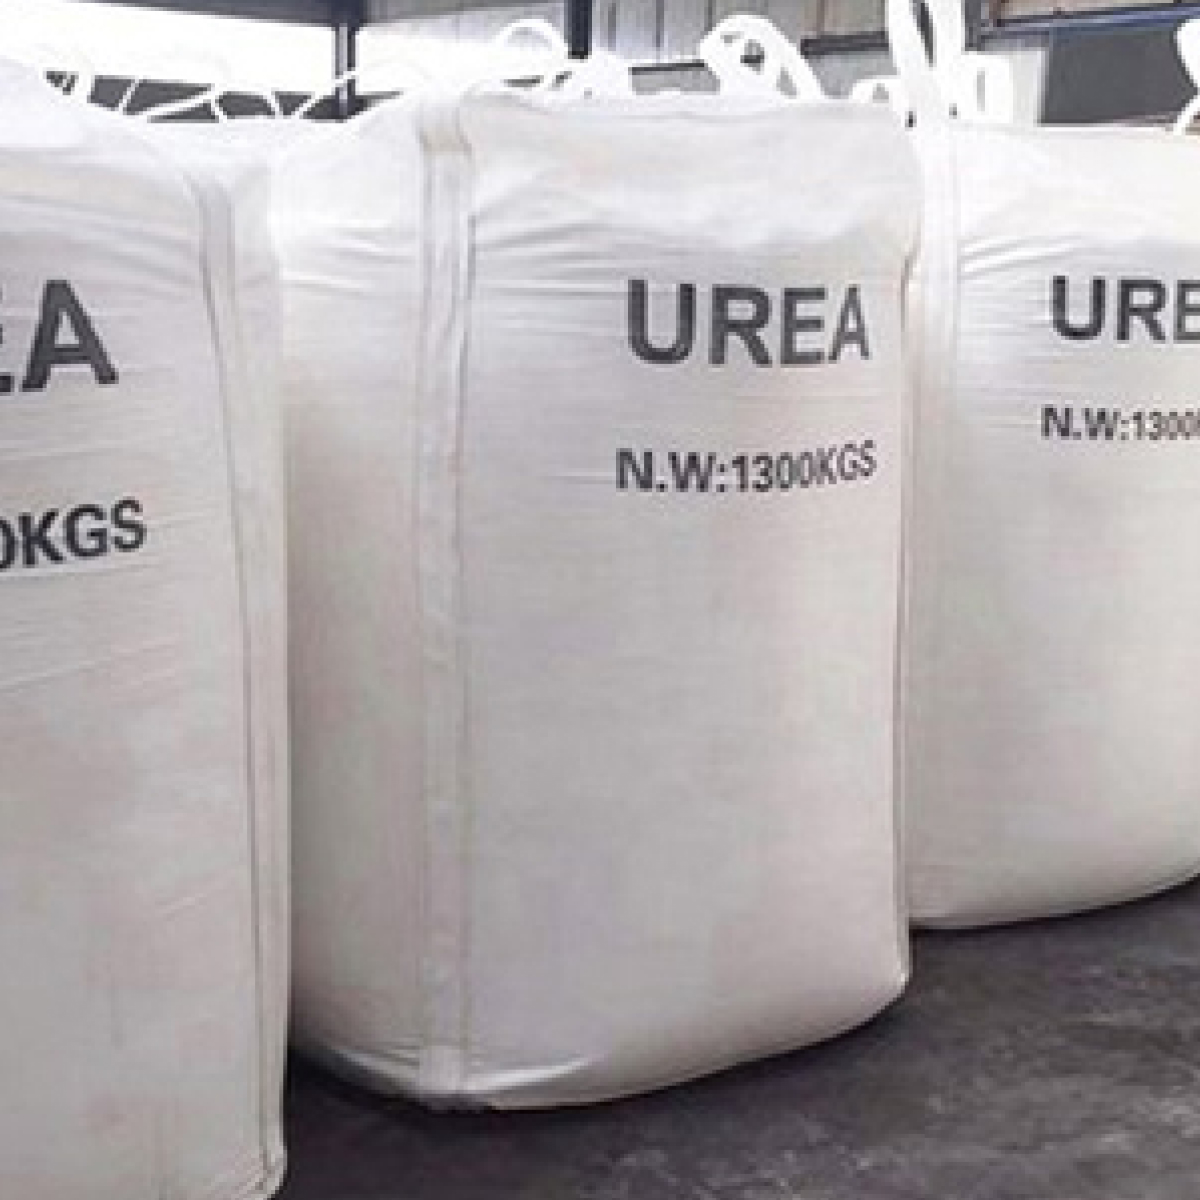 Buy Urea buy urea near me Buy Urea Online Urea Price urea stock price urea fertilizer price urea fertilizer prices